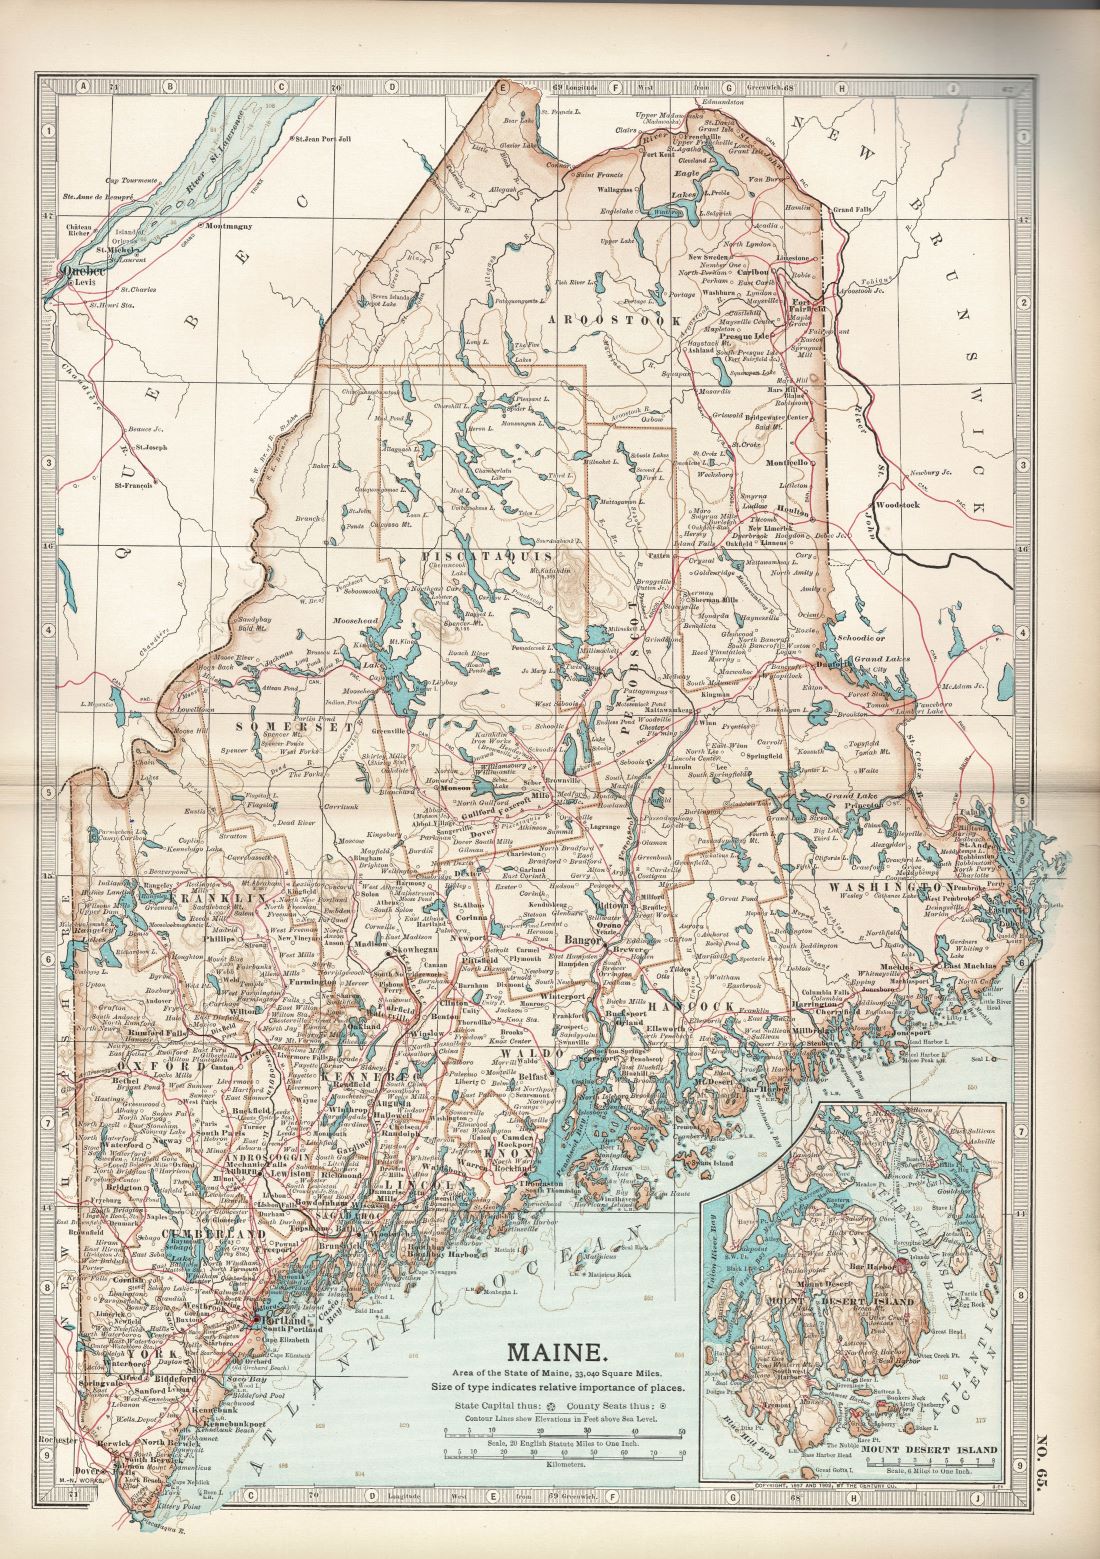 Maine, No.65, Encyclopaedia Britannica 1903